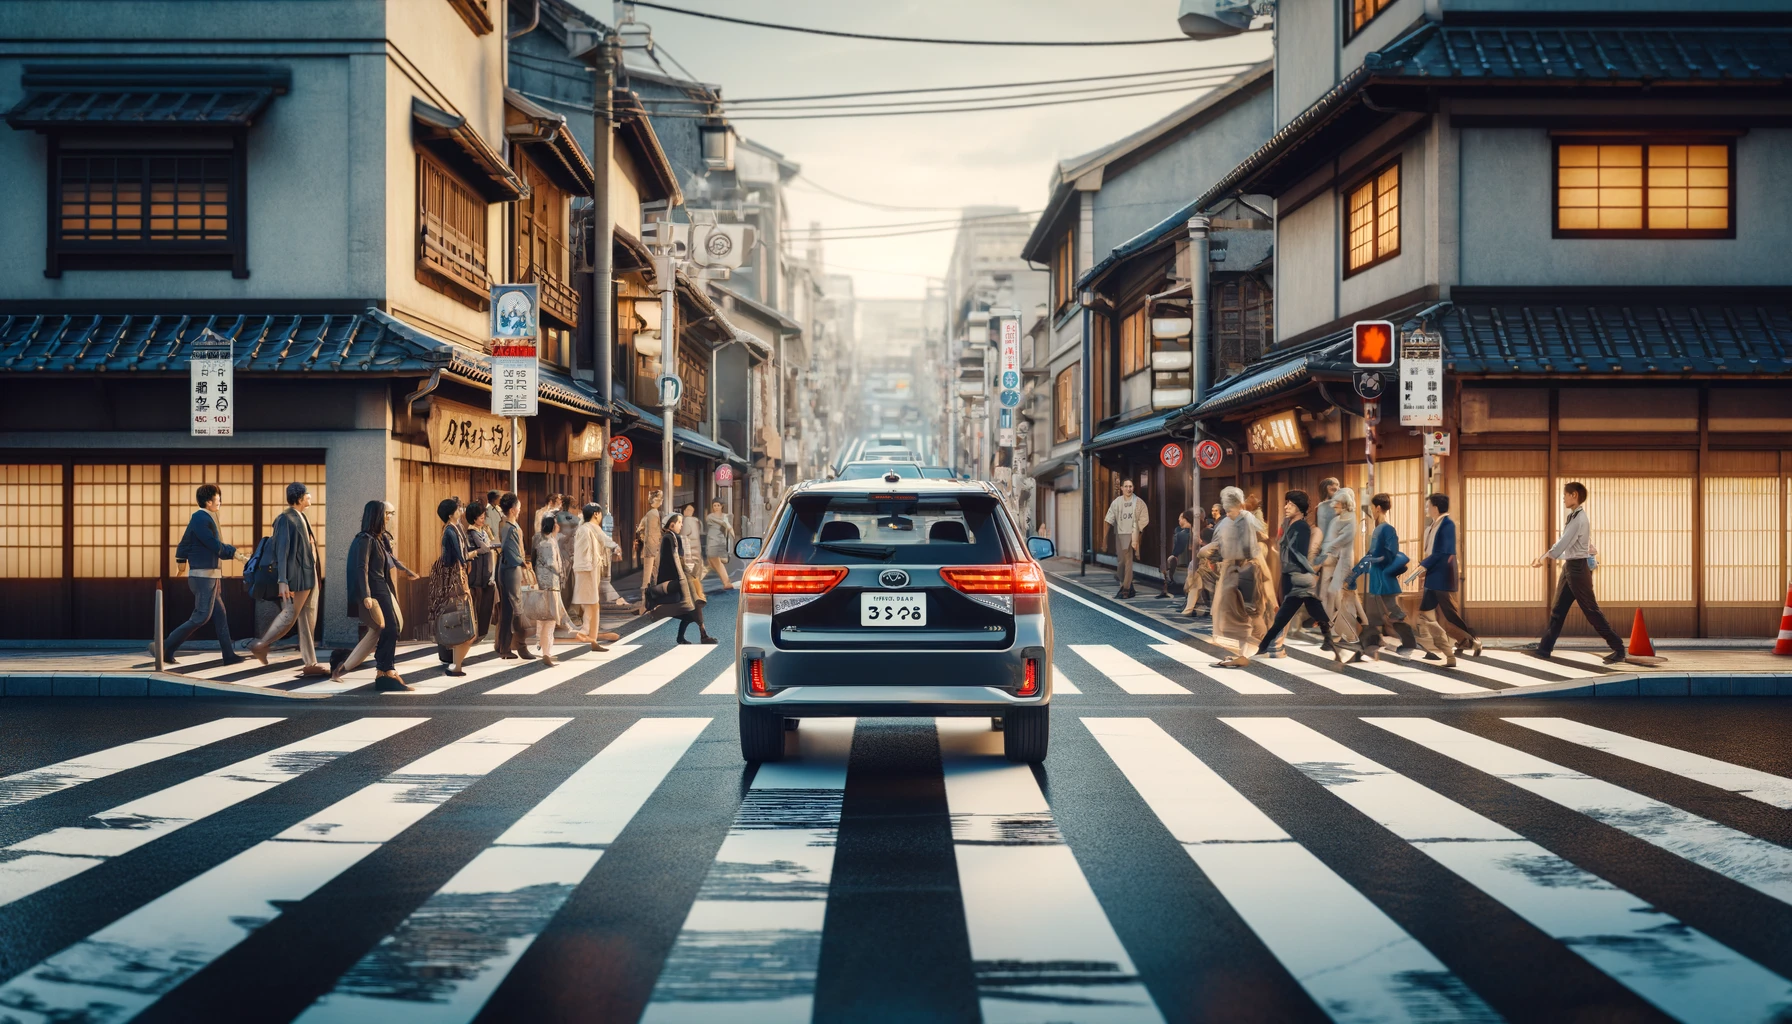 在日本開車時在斑馬線停下禮讓行人